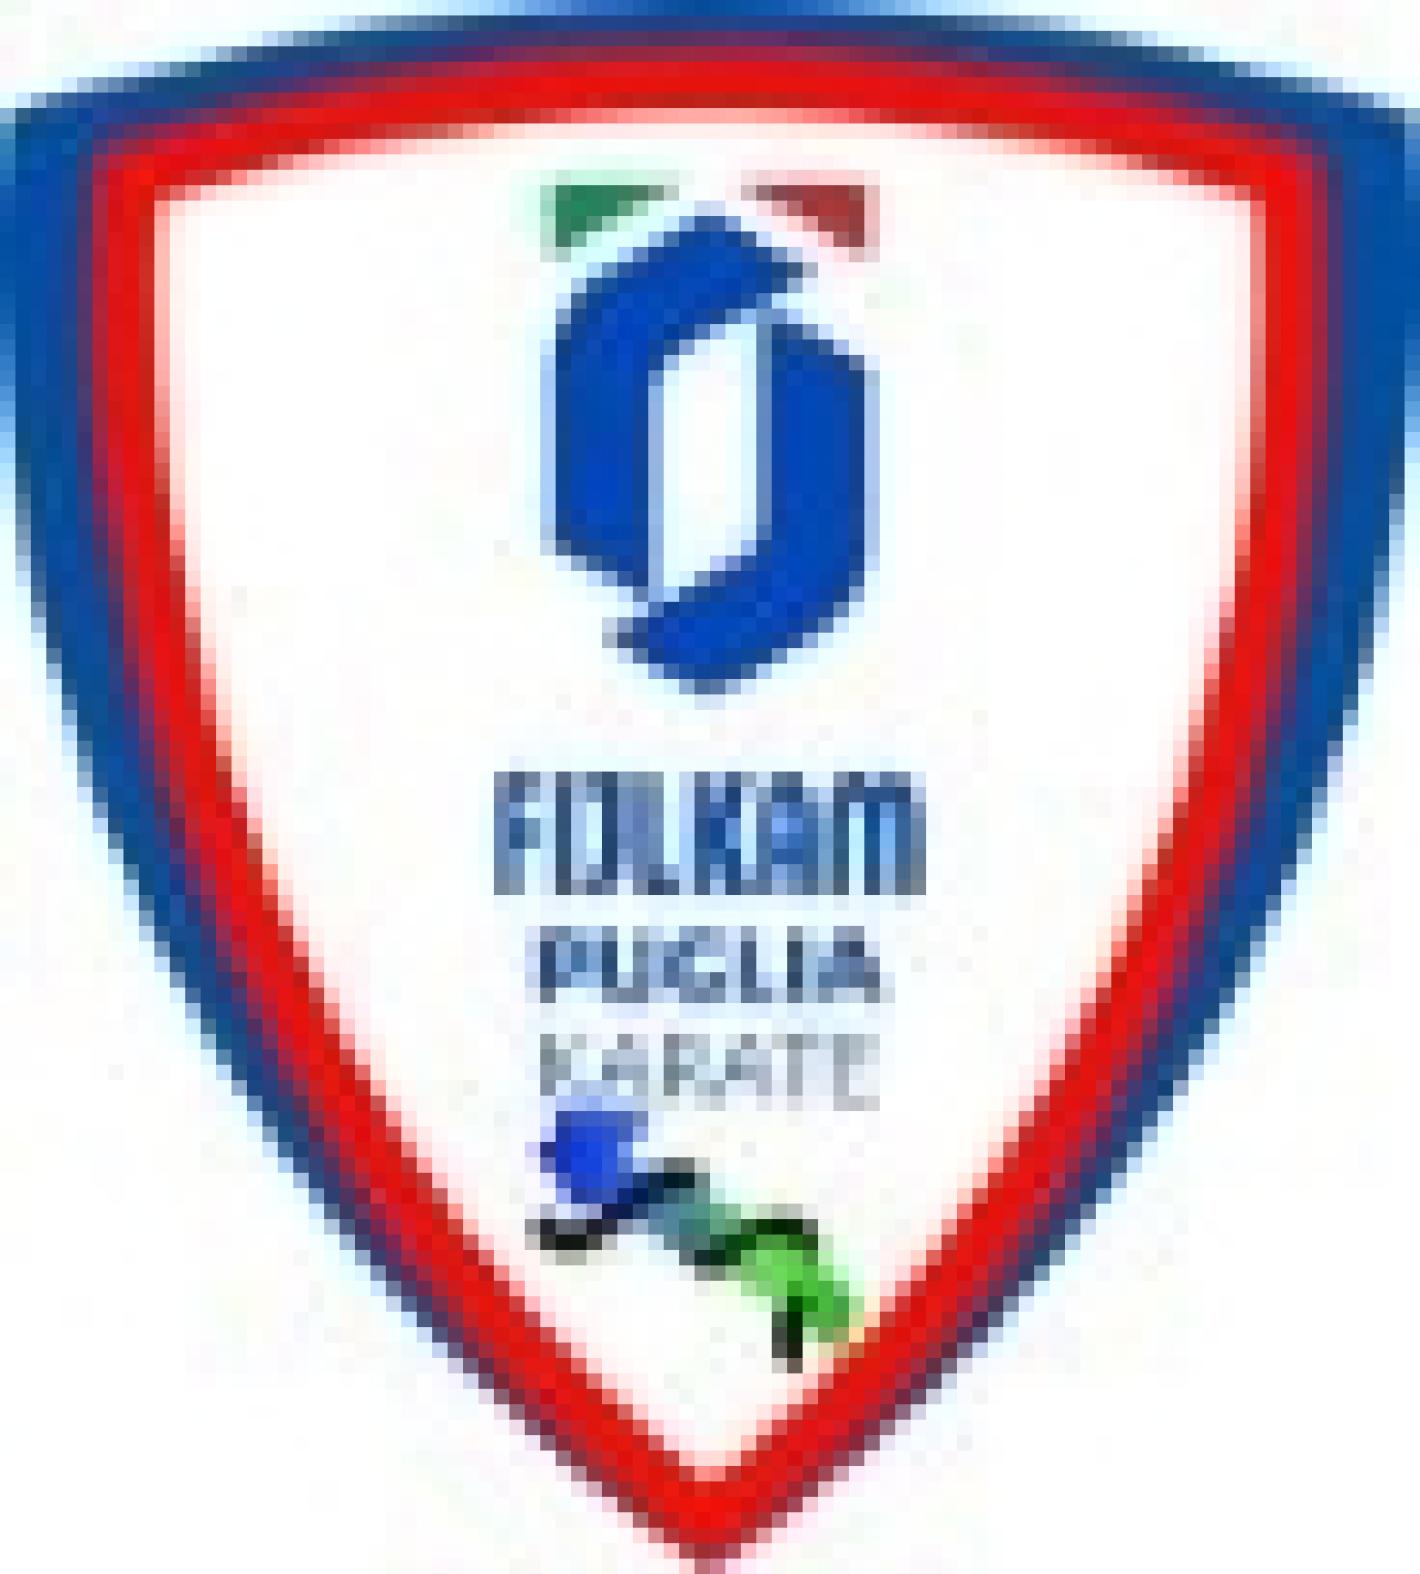 images/medium/logo_Puglia.jpg